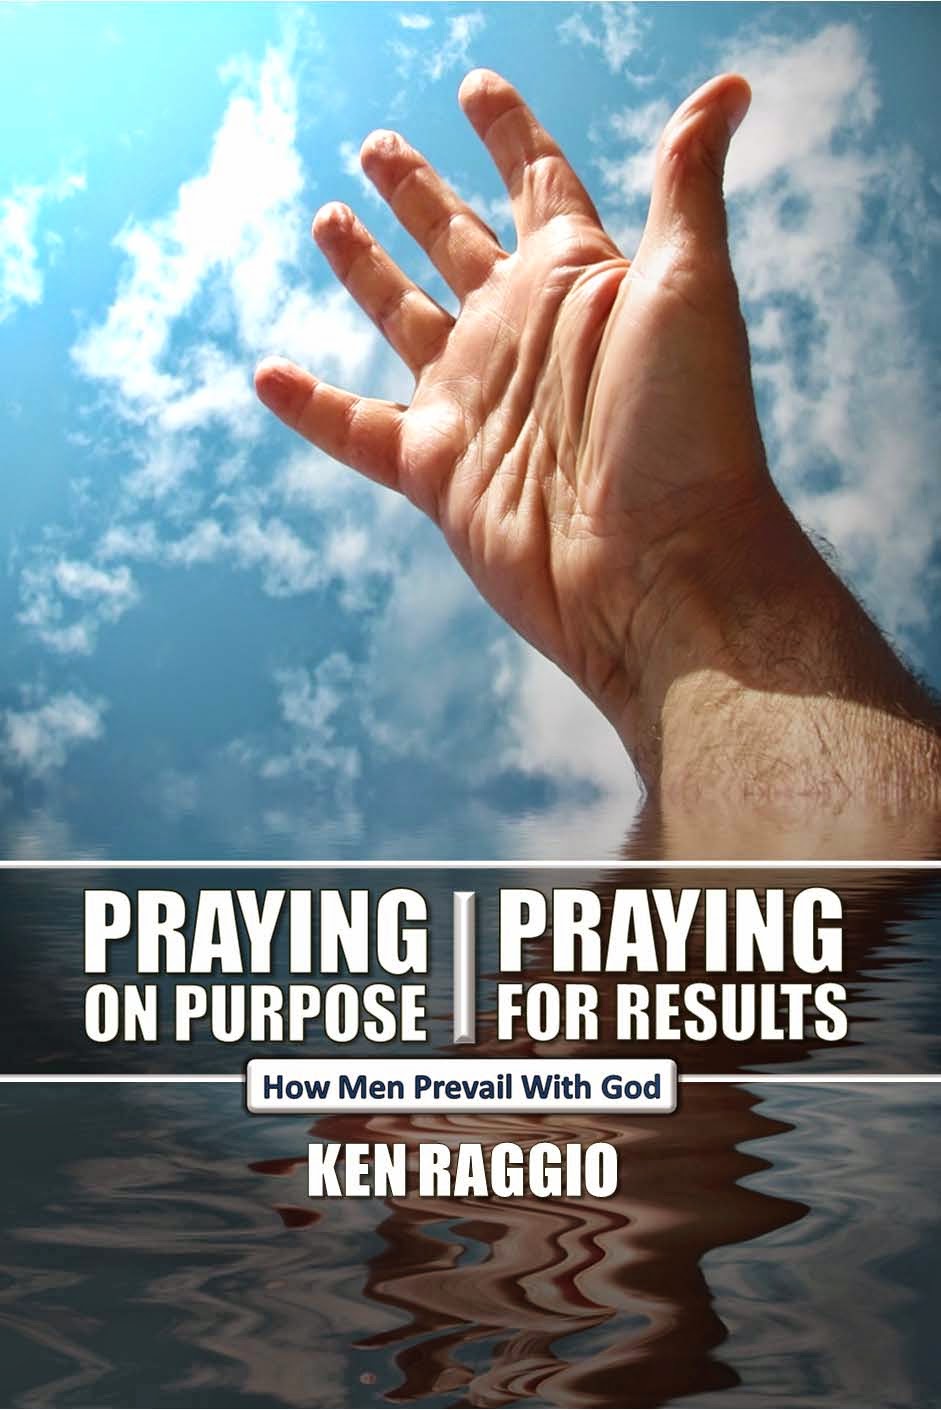 PRAYING ON PURPOSE